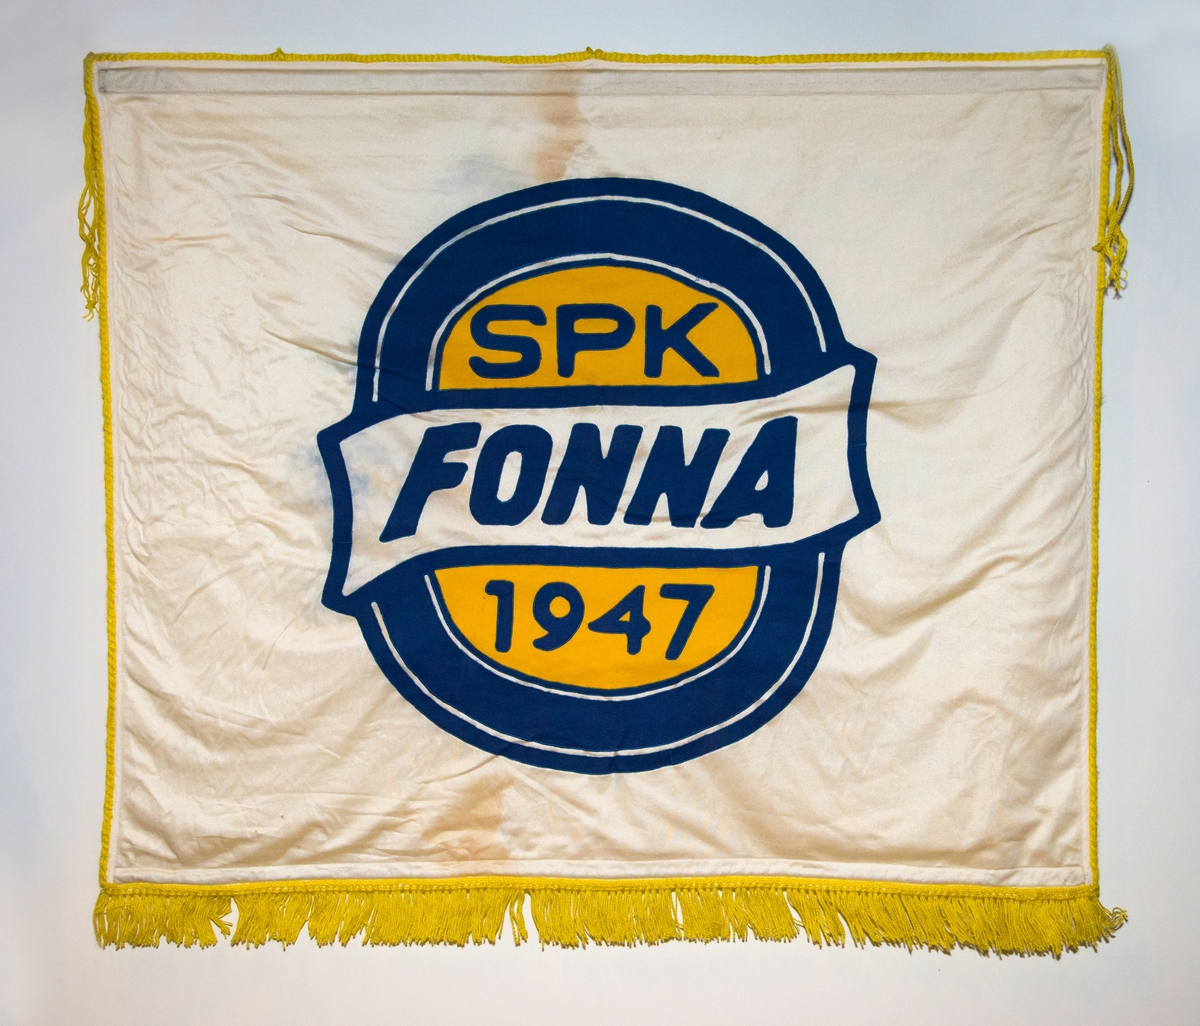 Motiv på ei side av fana er logo for sportsklubben Fonna: blå oval sirkel, gul inni, kvit vimpel med teksten FONNA på tvers av sirkel